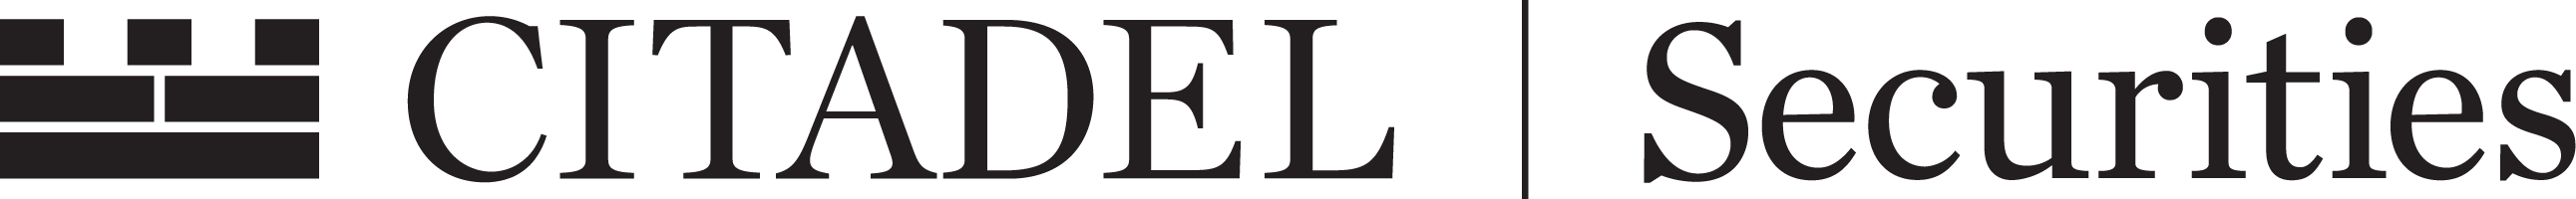 Citadel Securities's logo